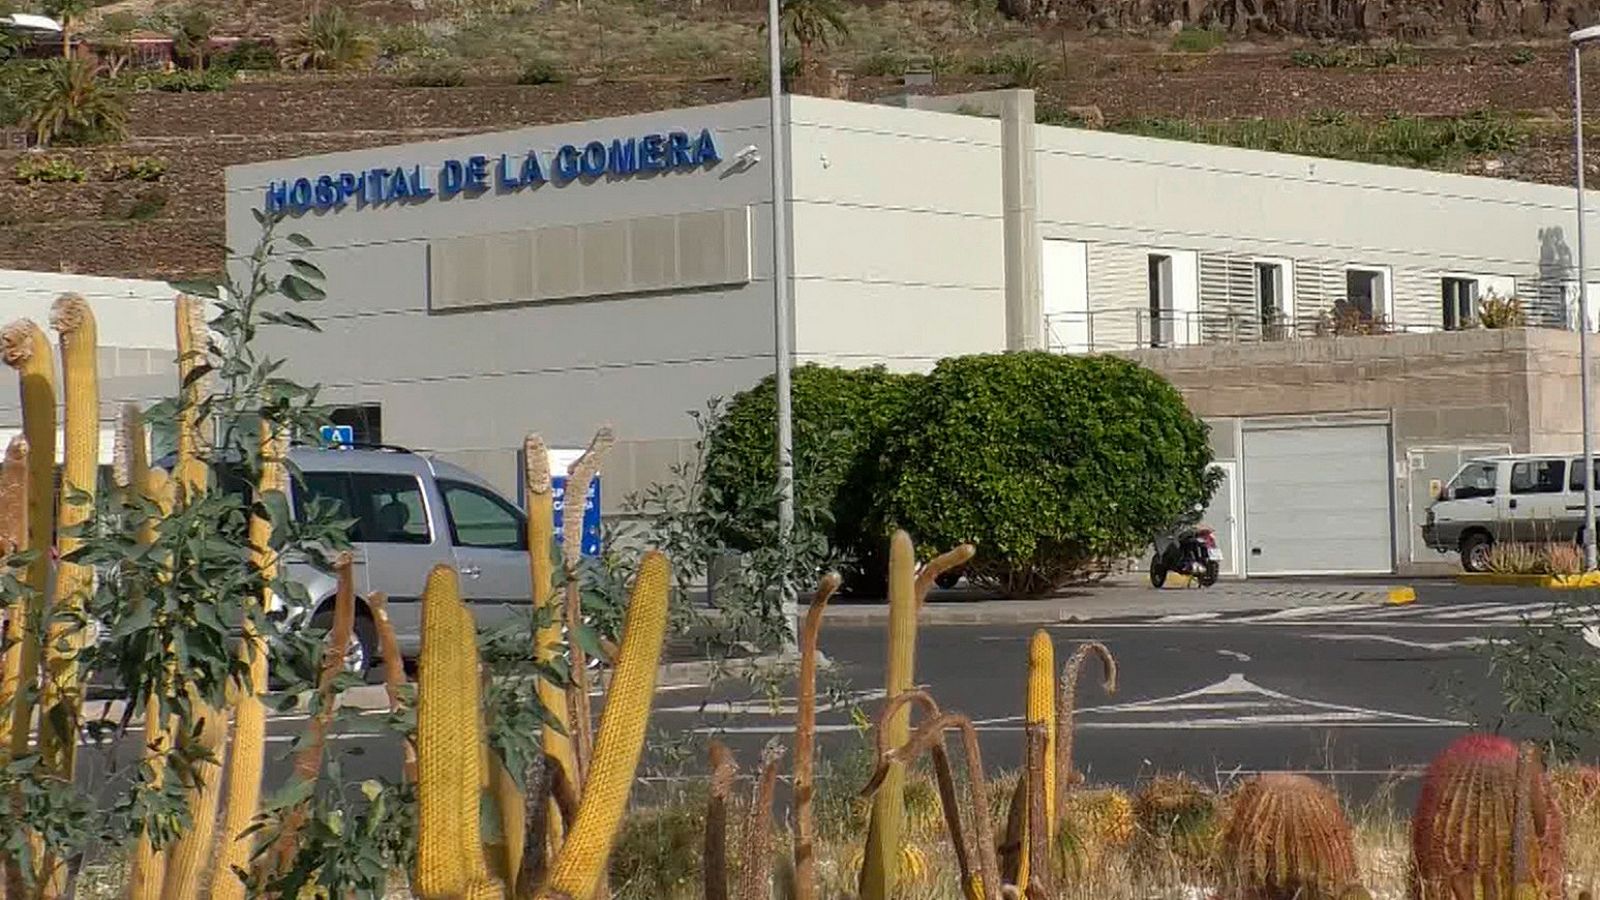 Exterior del Hospital de La Gomera, donde fue aislado el turista alemán junto con otros cuatro compatriotas.